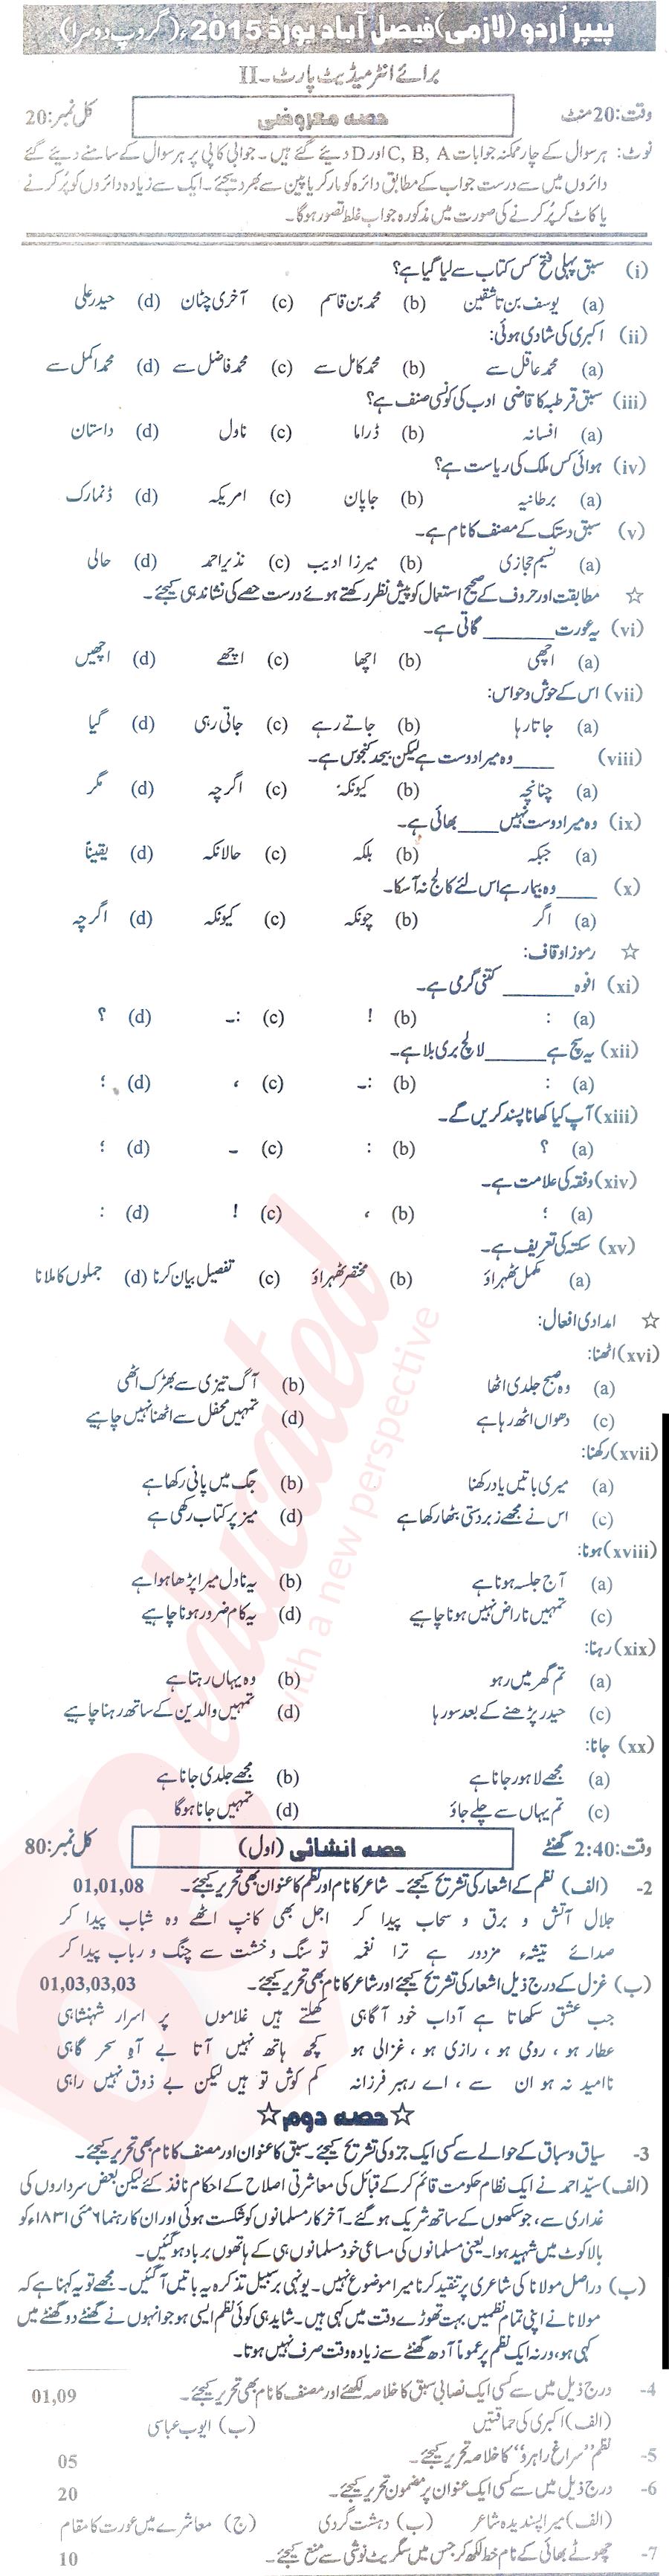 Urdu 12th class Past Paper Group 2 BISE Faisalabad 2015